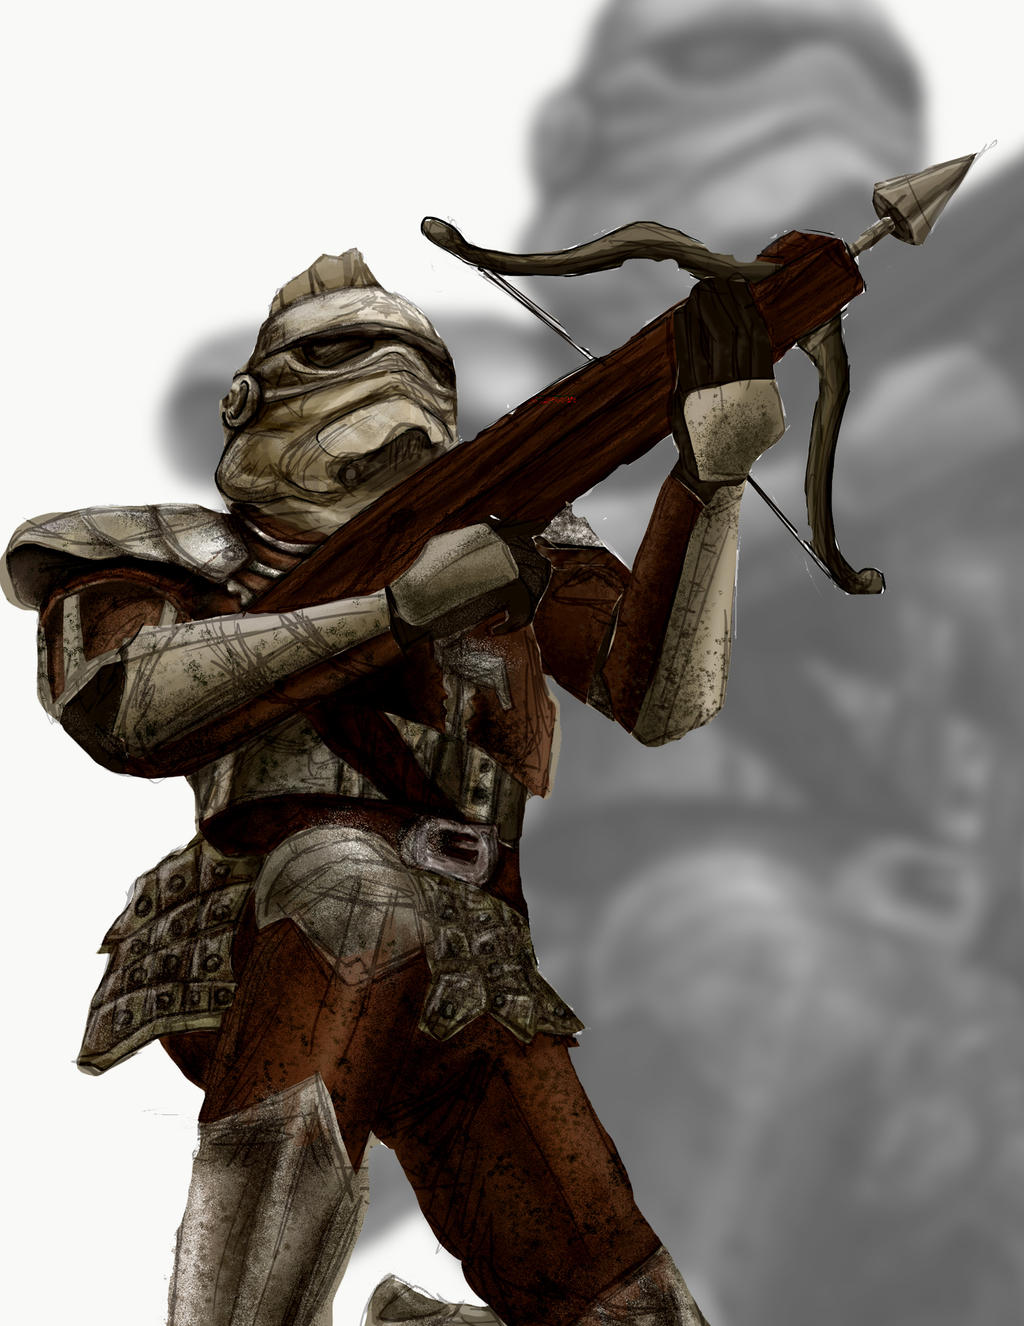 Serenian Soldier Medieval_stormtrooper_by_taniaga_d8vlxfb-fullview.jpg?token=eyJ0eXAiOiJKV1QiLCJhbGciOiJIUzI1NiJ9.eyJzdWIiOiJ1cm46YXBwOjdlMGQxODg5ODIyNjQzNzNhNWYwZDQxNWVhMGQyNmUwIiwiaXNzIjoidXJuOmFwcDo3ZTBkMTg4OTgyMjY0MzczYTVmMGQ0MTVlYTBkMjZlMCIsIm9iaiI6W1t7ImhlaWdodCI6Ijw9MTMyNiIsInBhdGgiOiJcL2ZcLzY2MzYzNWQ0LTI2NWYtNDc1Yi1hNWJjLTVlNGUxYTRlYjQ3ZFwvZDh2bHhmYi1kZjYwODYyZS02YTVmLTQ0ZmEtOTNkZi1mYmViMDUxZjBlOWEuanBnIiwid2lkdGgiOiI8PTEwMjQifV1dLCJhdWQiOlsidXJuOnNlcnZpY2U6aW1hZ2Uub3BlcmF0aW9ucyJdfQ